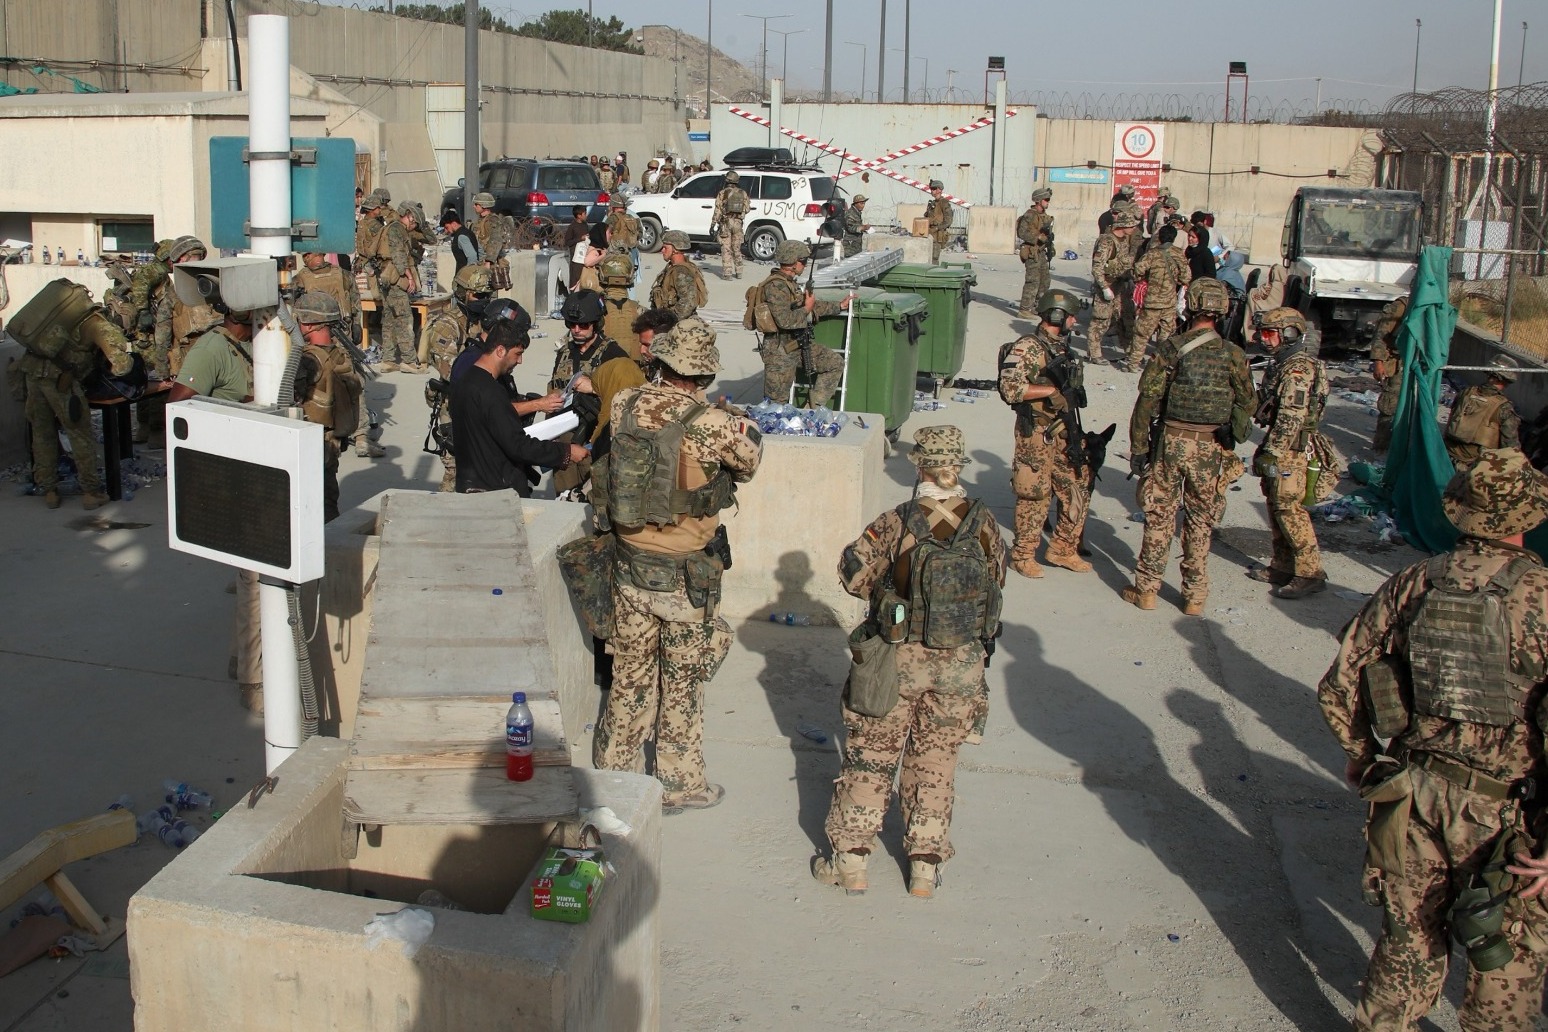 Veterans unite on social media to help evacuate Afghans 